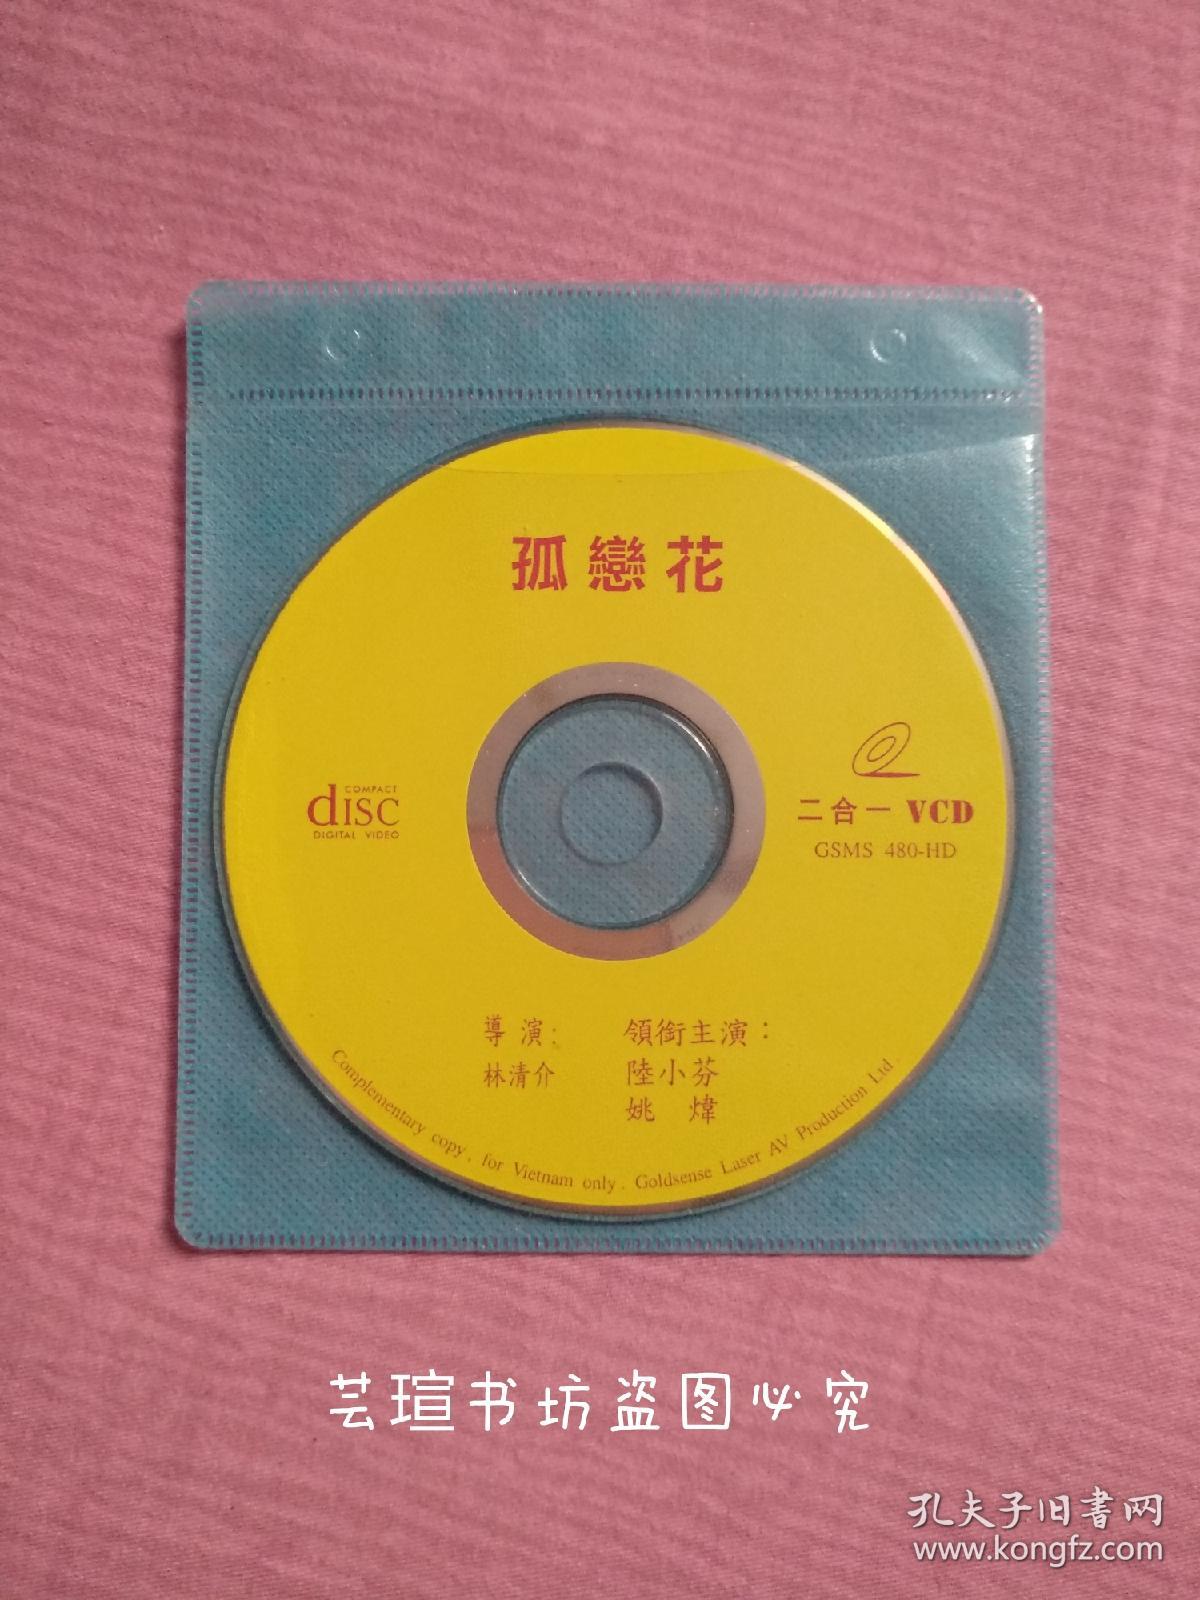 孤恋花（VCD，二合一裸碟，光碟经过测试，正常播放，画质还可以，符合VCD的标准，几乎没有什么问题。）注:因光盘具有可复制性，所以搞清楚下单，售后不退。